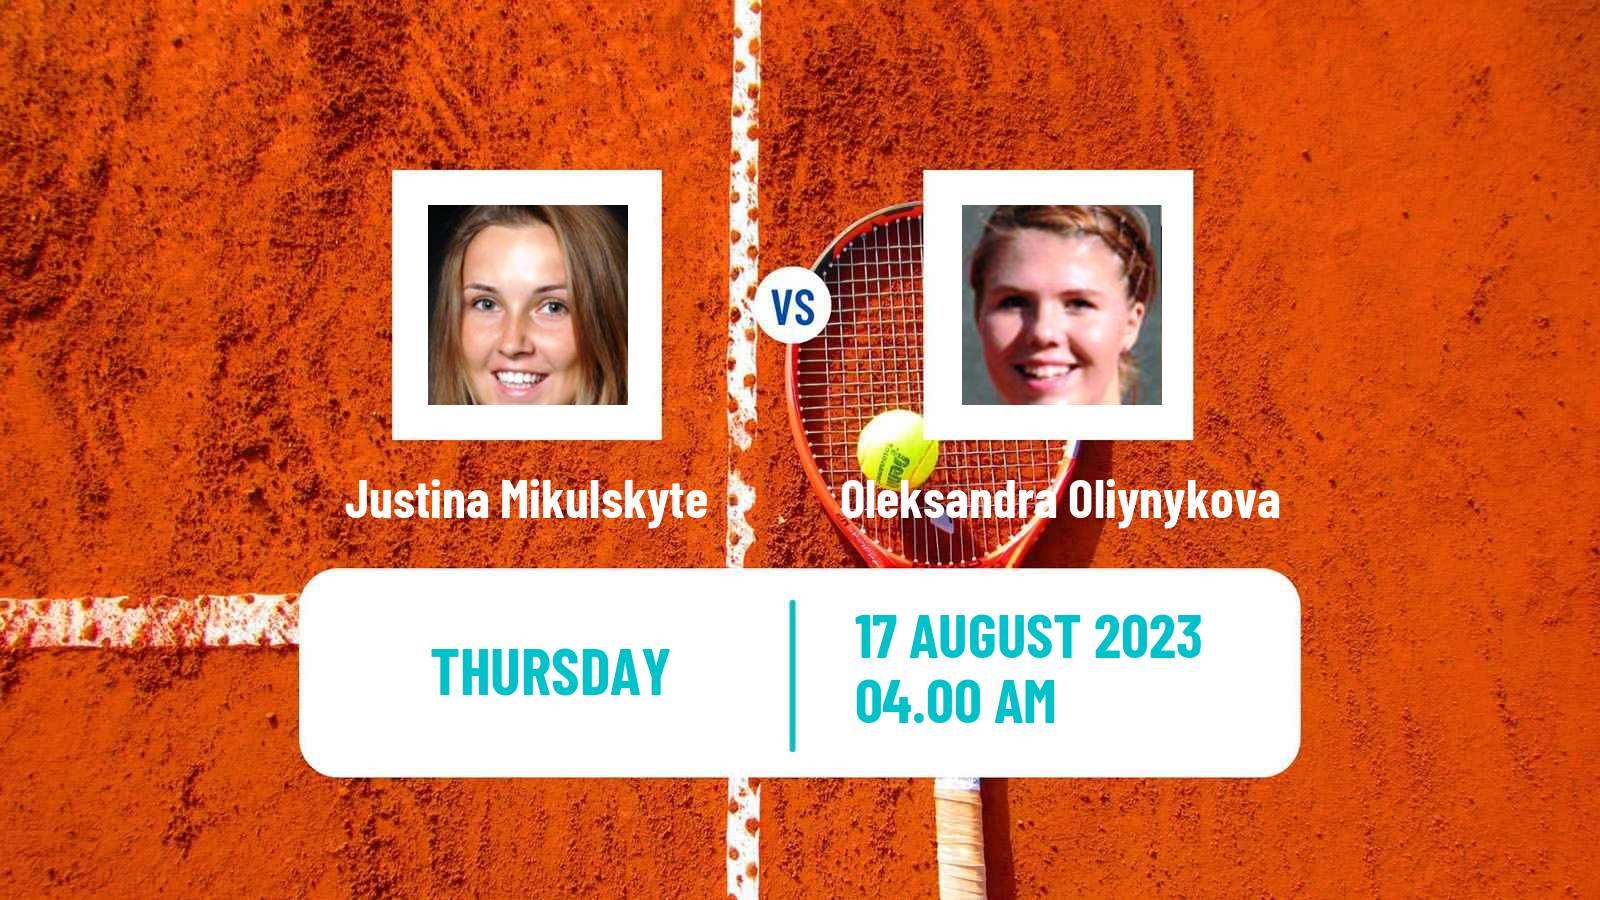 Tennis ITF W40 Wroclaw Women Justina Mikulskyte - Oleksandra Oliynykova